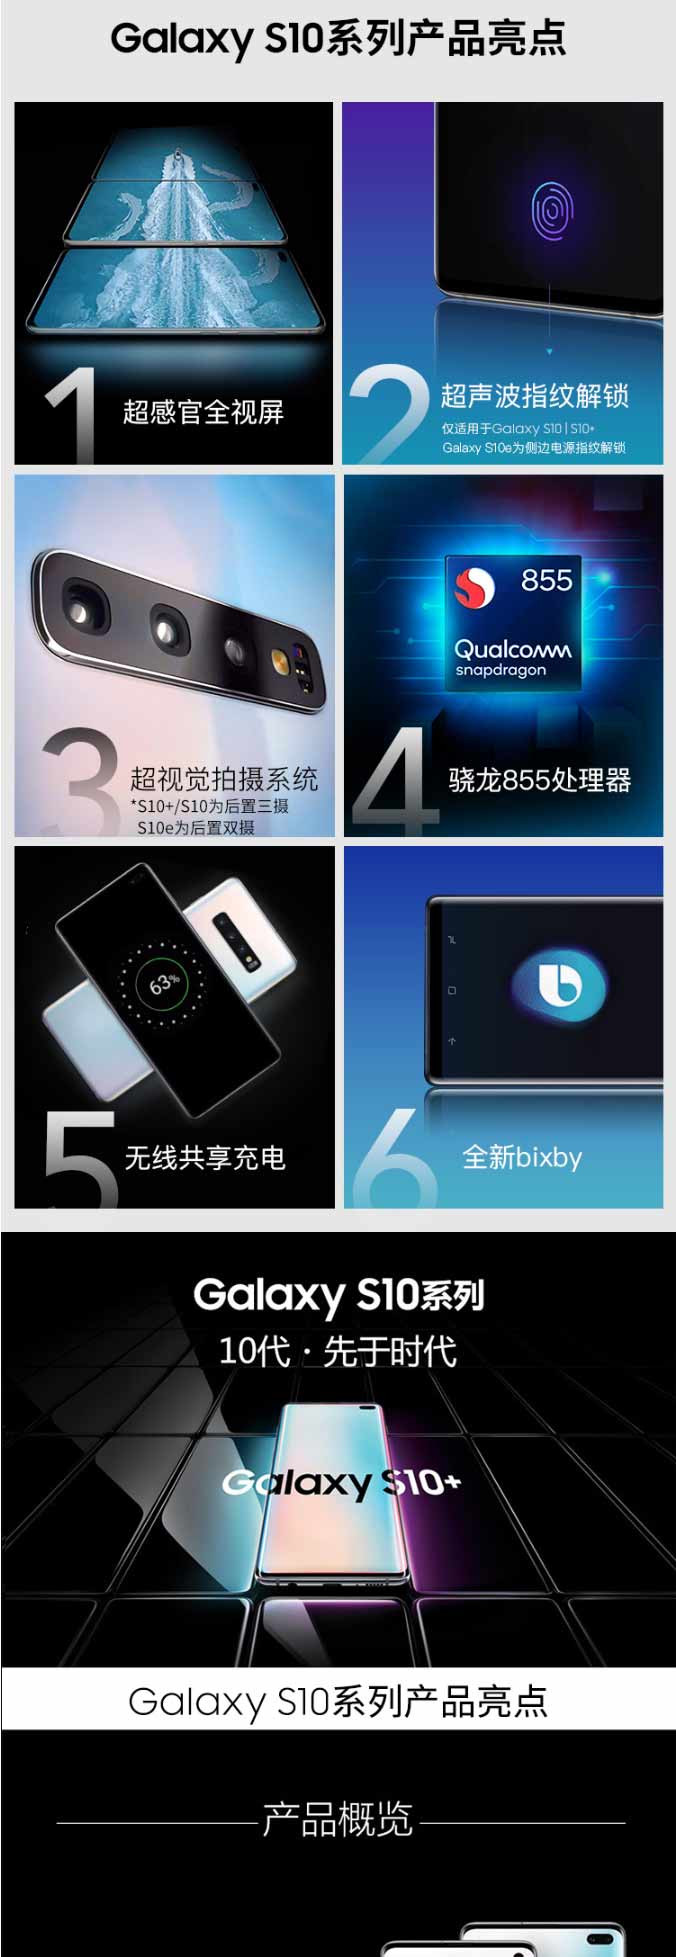 三星 Galaxy S10+ 3D超声波屏下指纹全视屏骁龙855双卡双待全网通4G手机8+512G